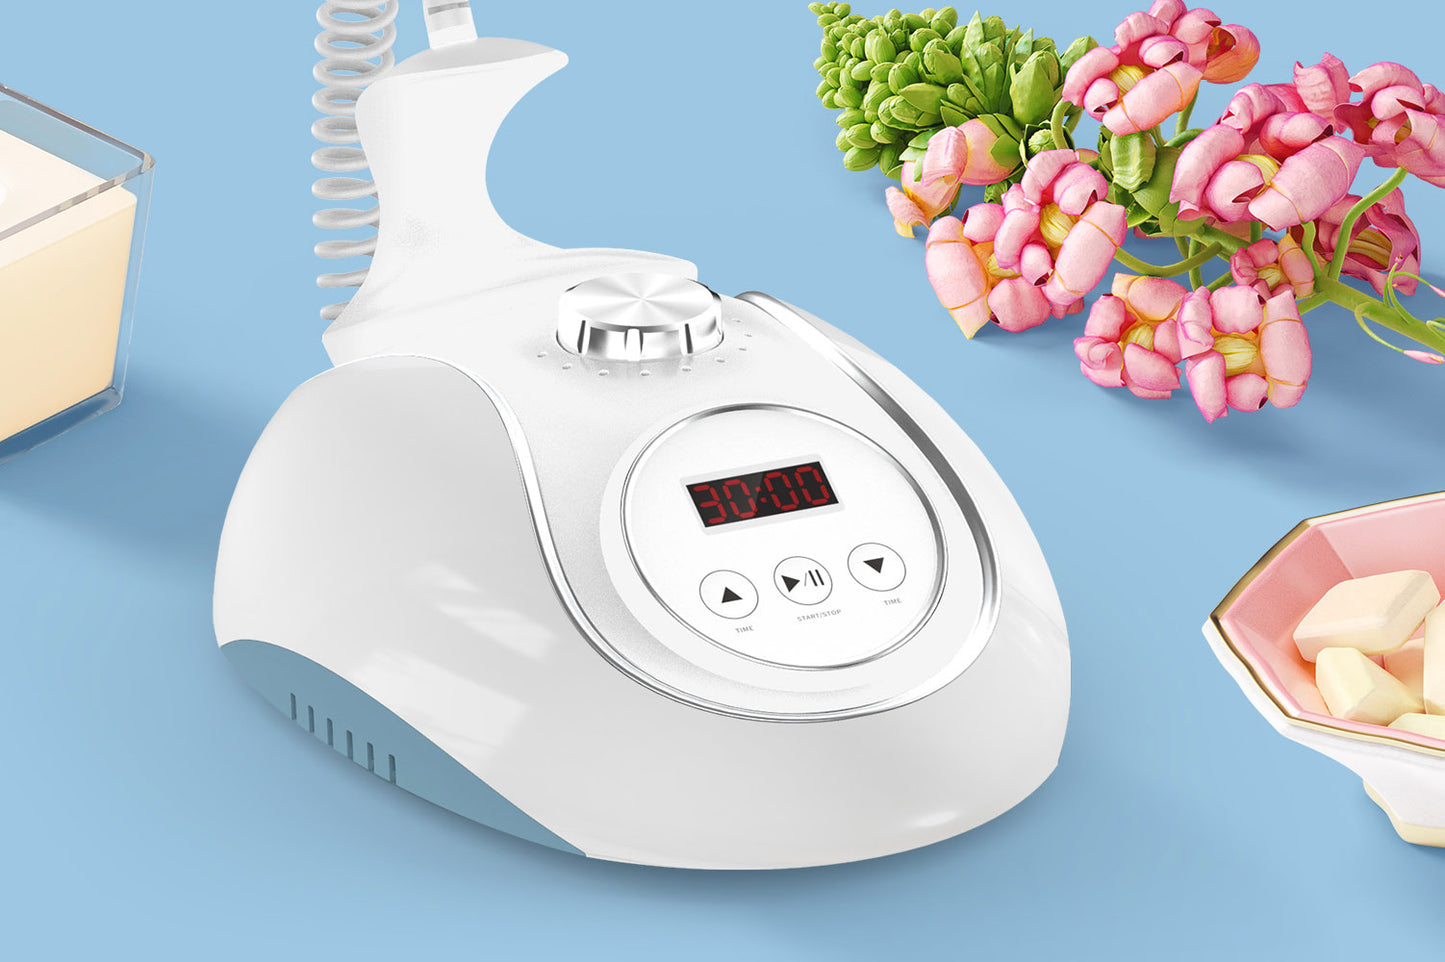 Unoisetion Ultrasonic Cavitation 2.0 Ultrasound Body Slimming Fat Loss Home Use Machine - Suerbeaty